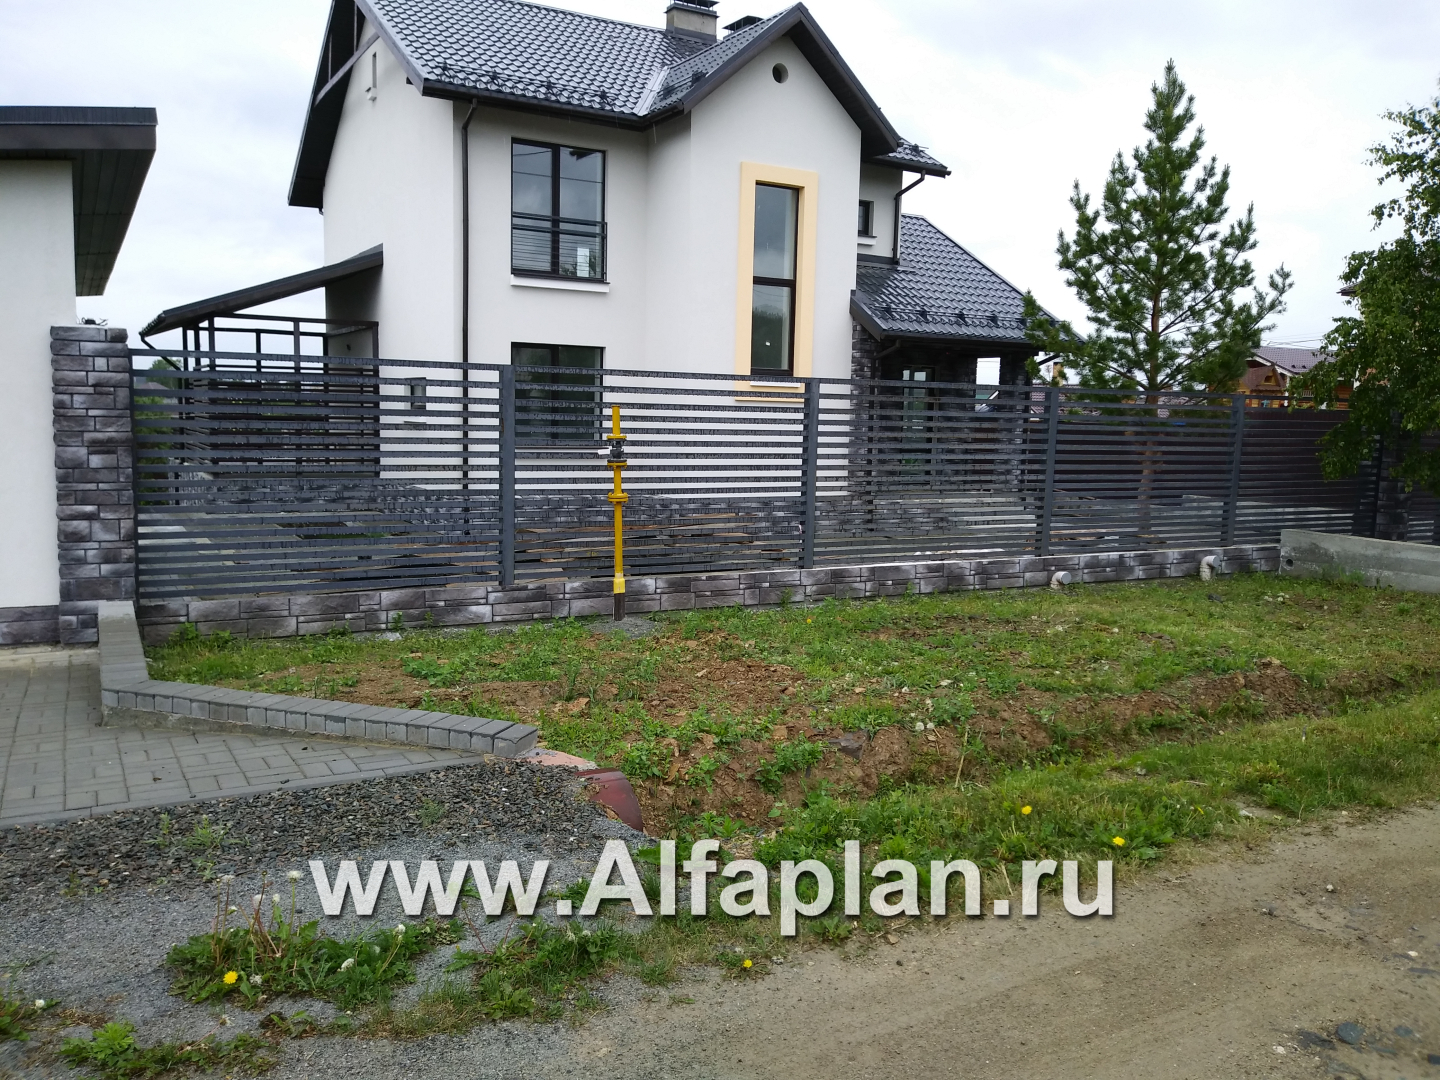 Проекты домов Альфаплан - «Скандинавия» - современный дом с удобным планом - дополнительное изображение №4